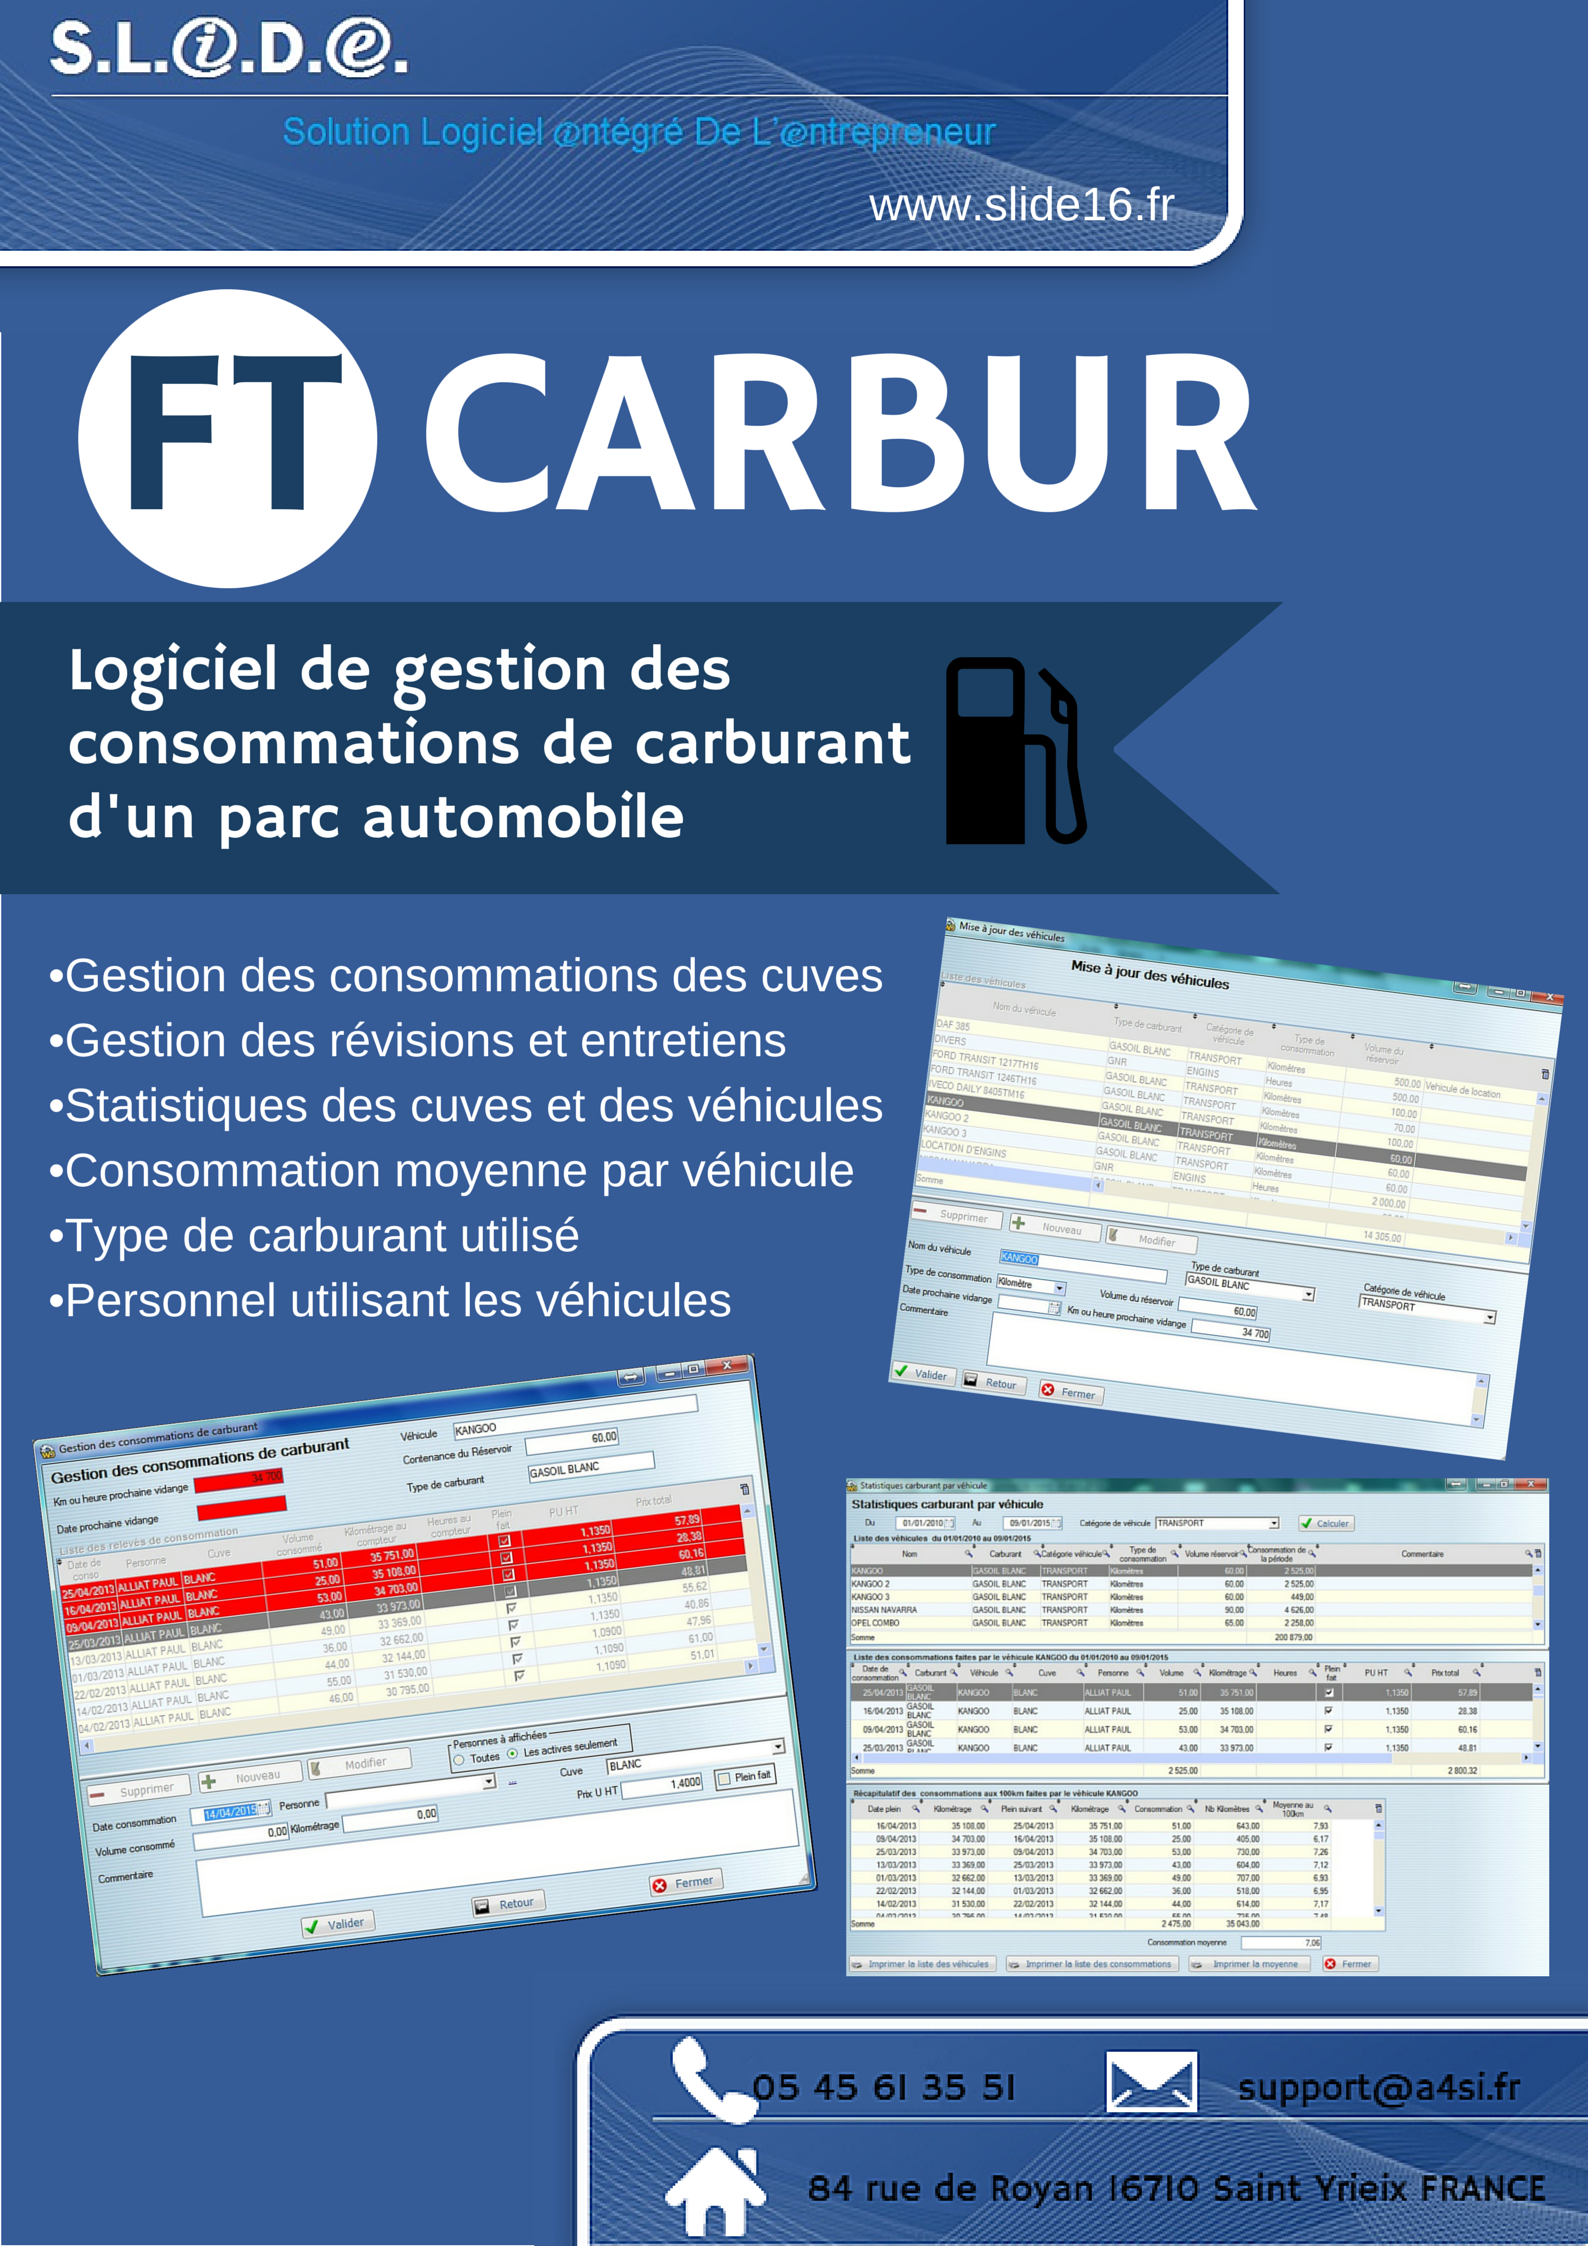 logiciel de gestion consommation carburant FTCARBU